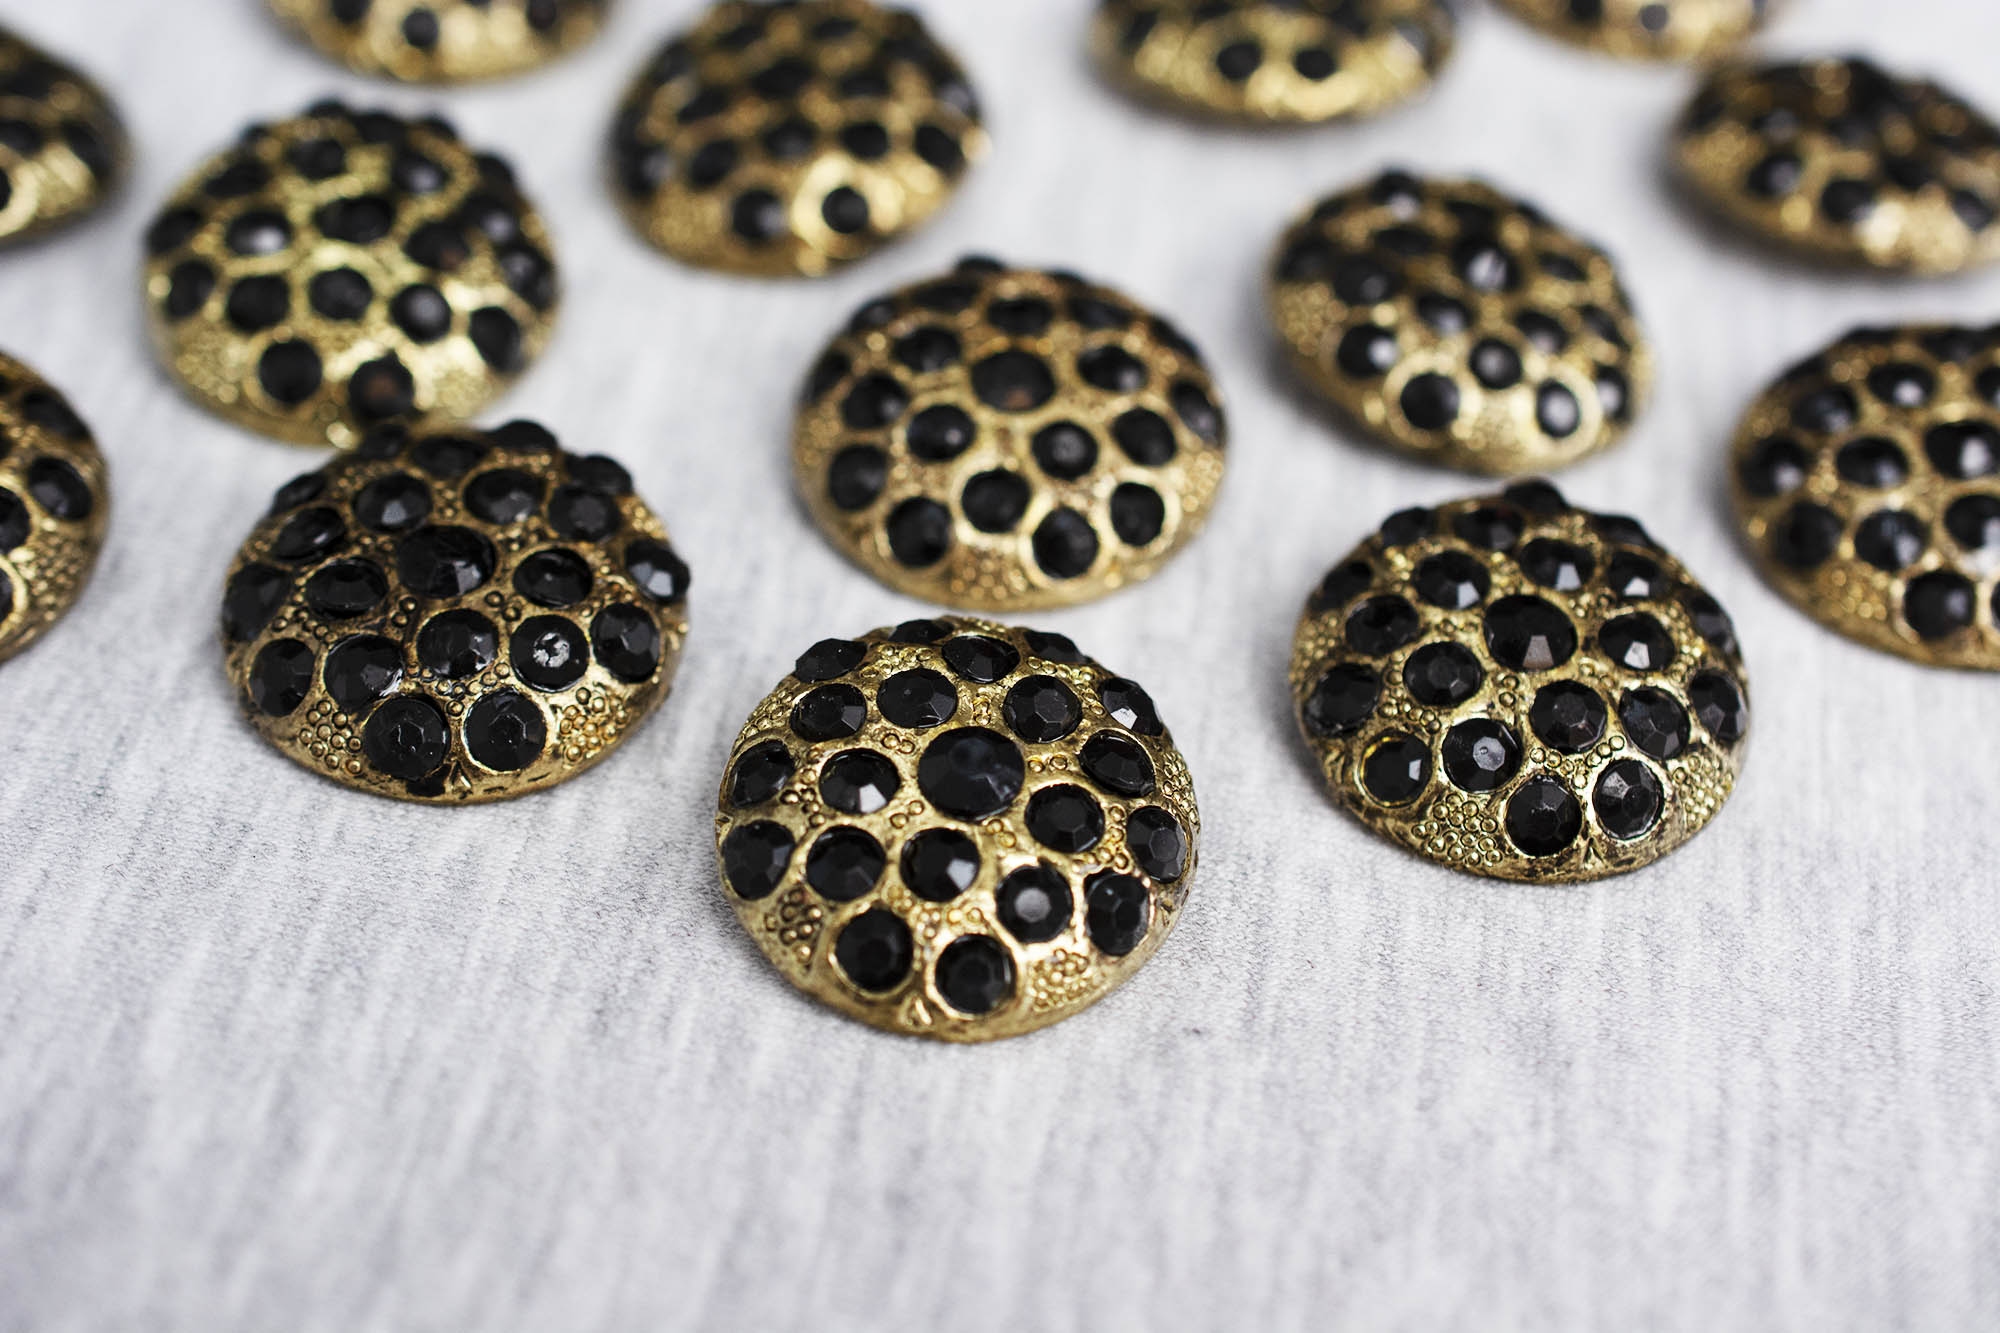 Pozłacany metalowy guzik na stopce, ozdobiony czarnymi kryształkami, o szerokości 2,5 cm.